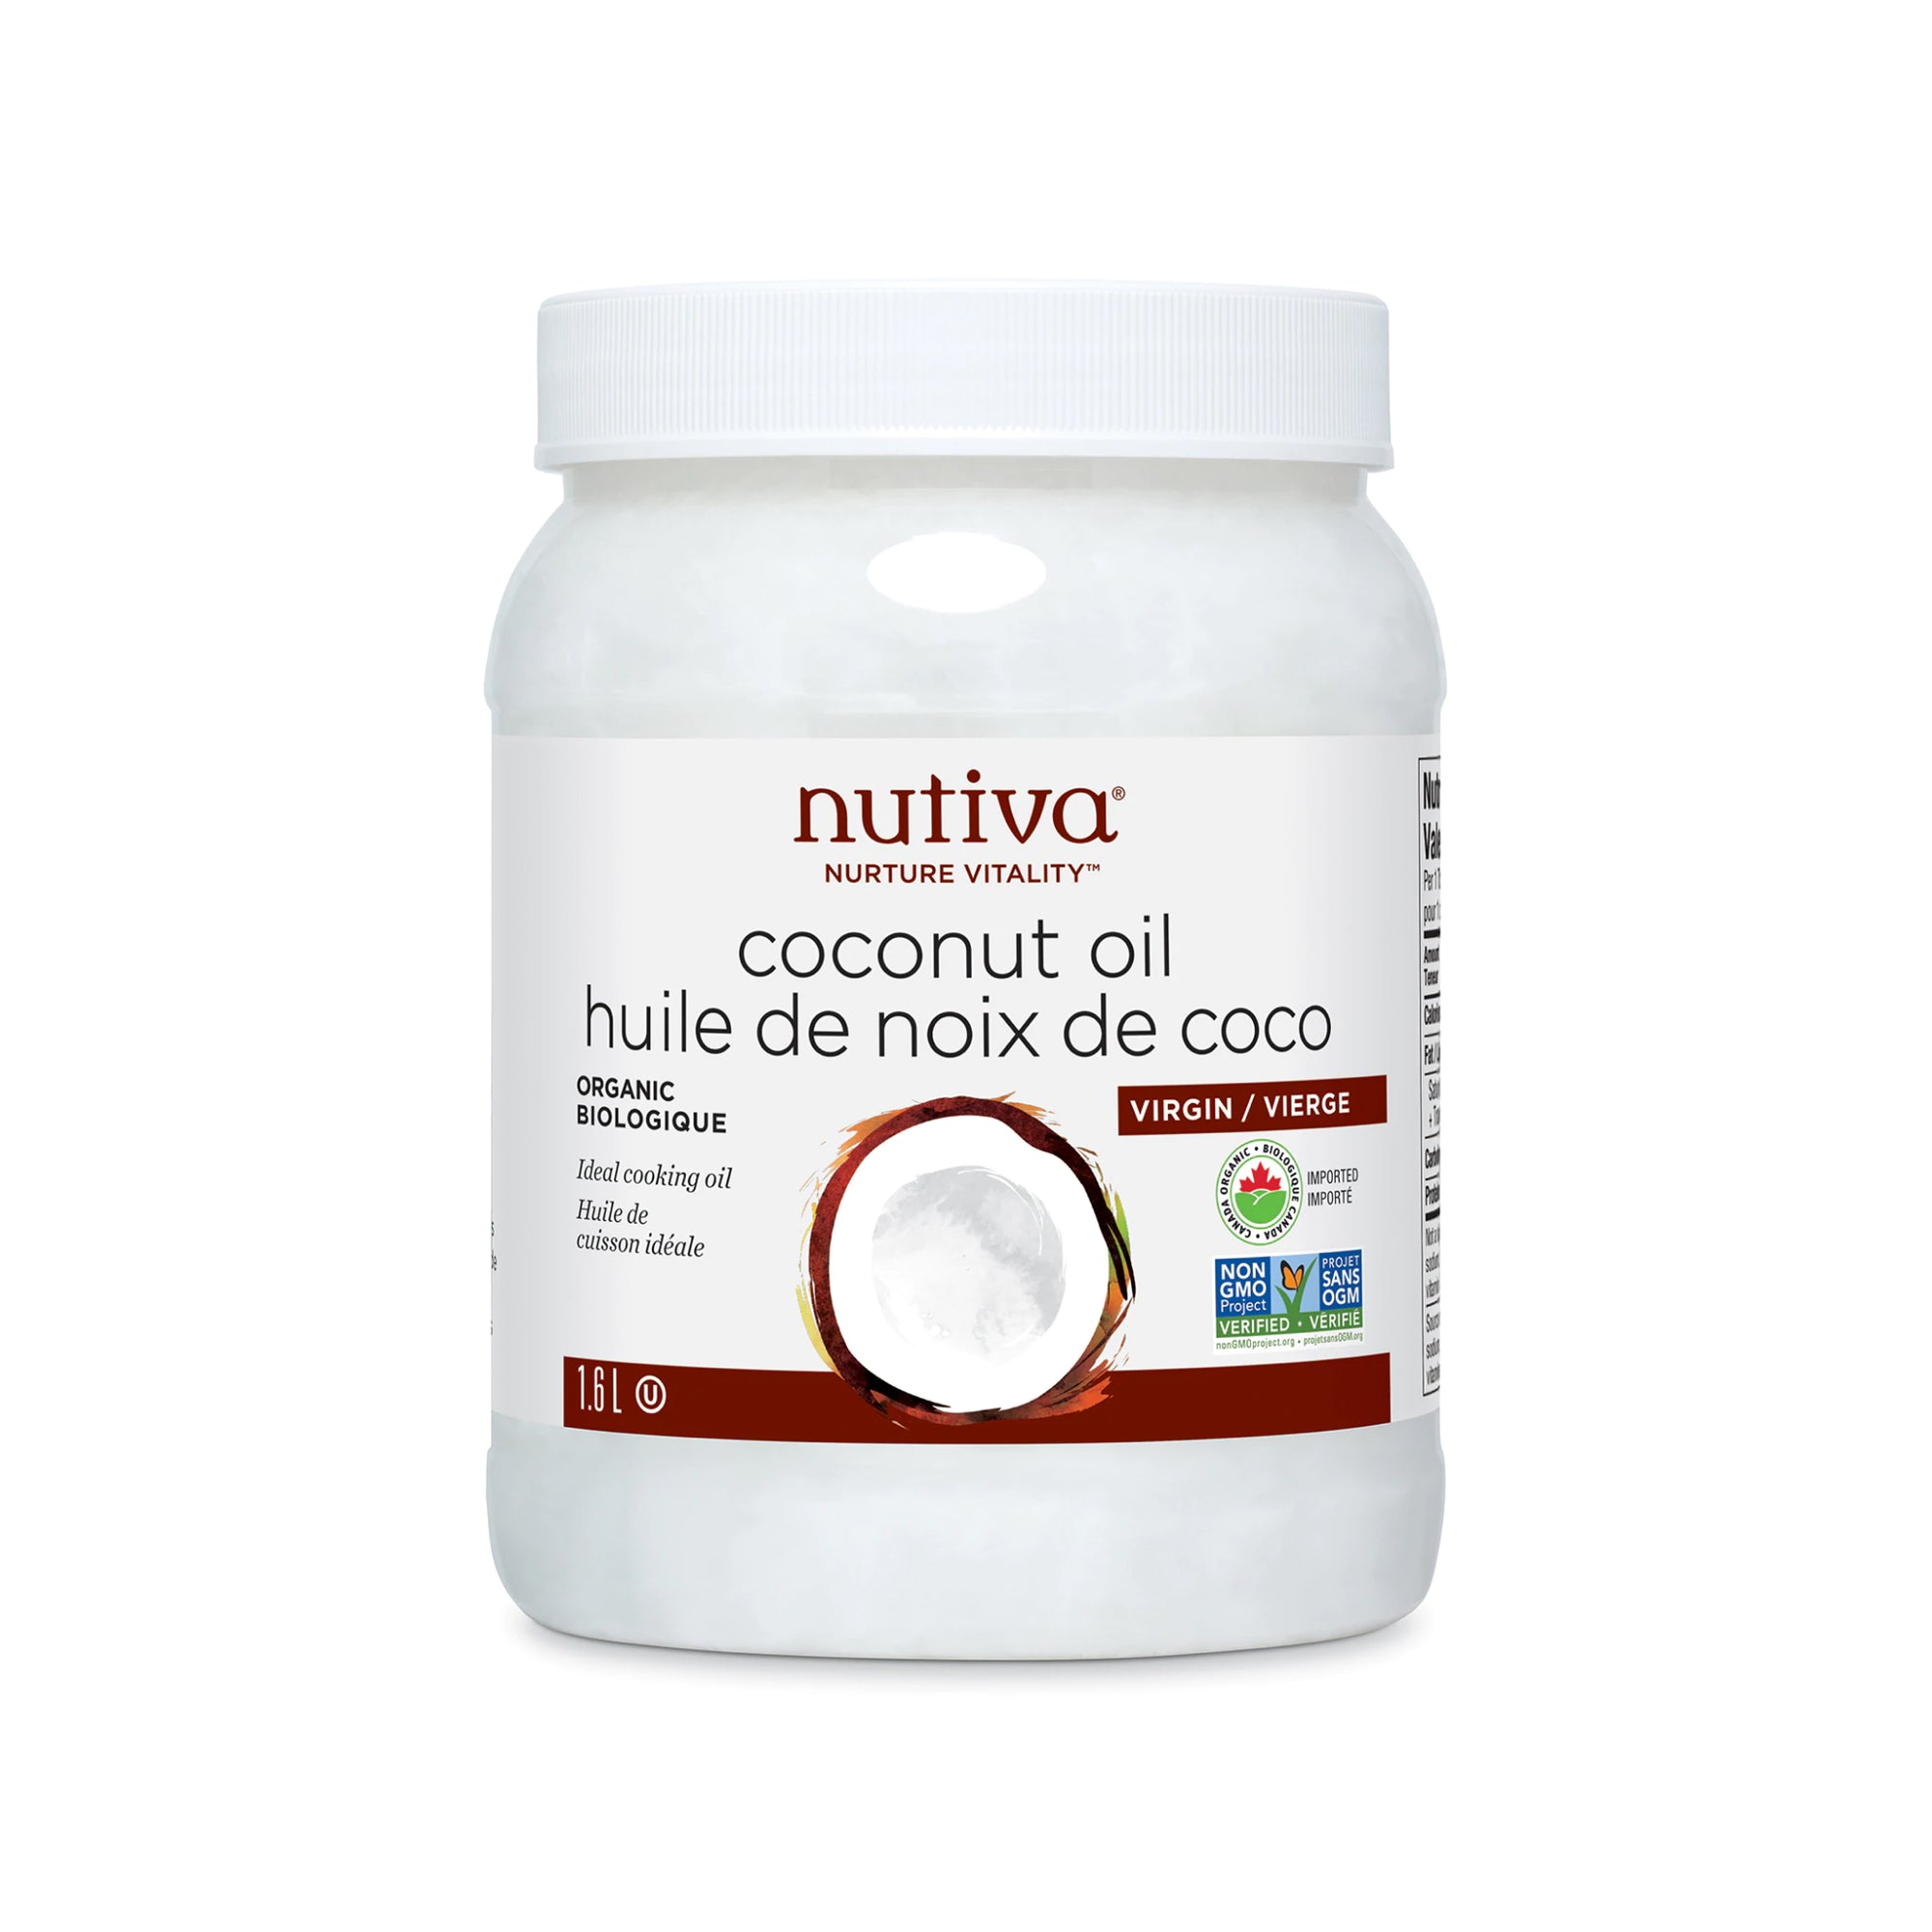 Nutiva Organic Virgin Coconut Oil 1.6L